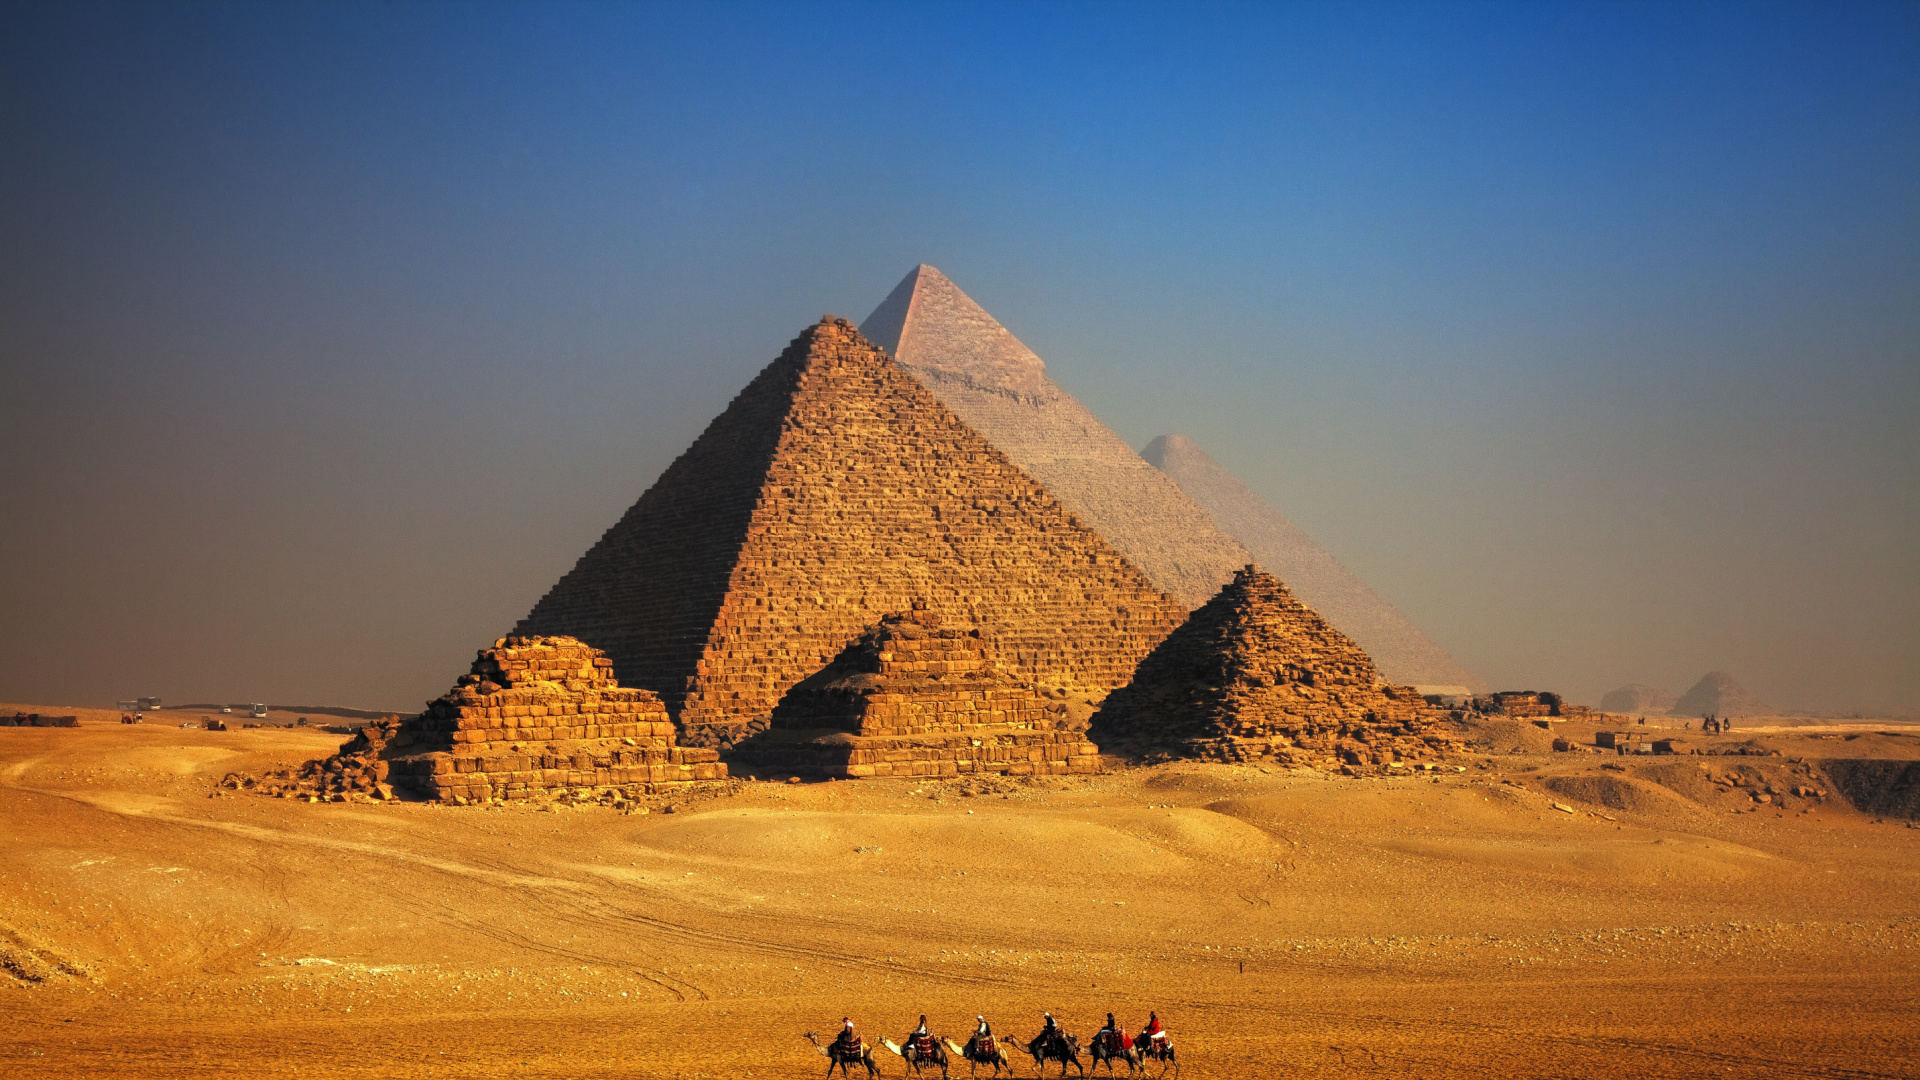 Braune Pyramide in Der Wüste Tagsüber. Wallpaper in 1920x1080 Resolution